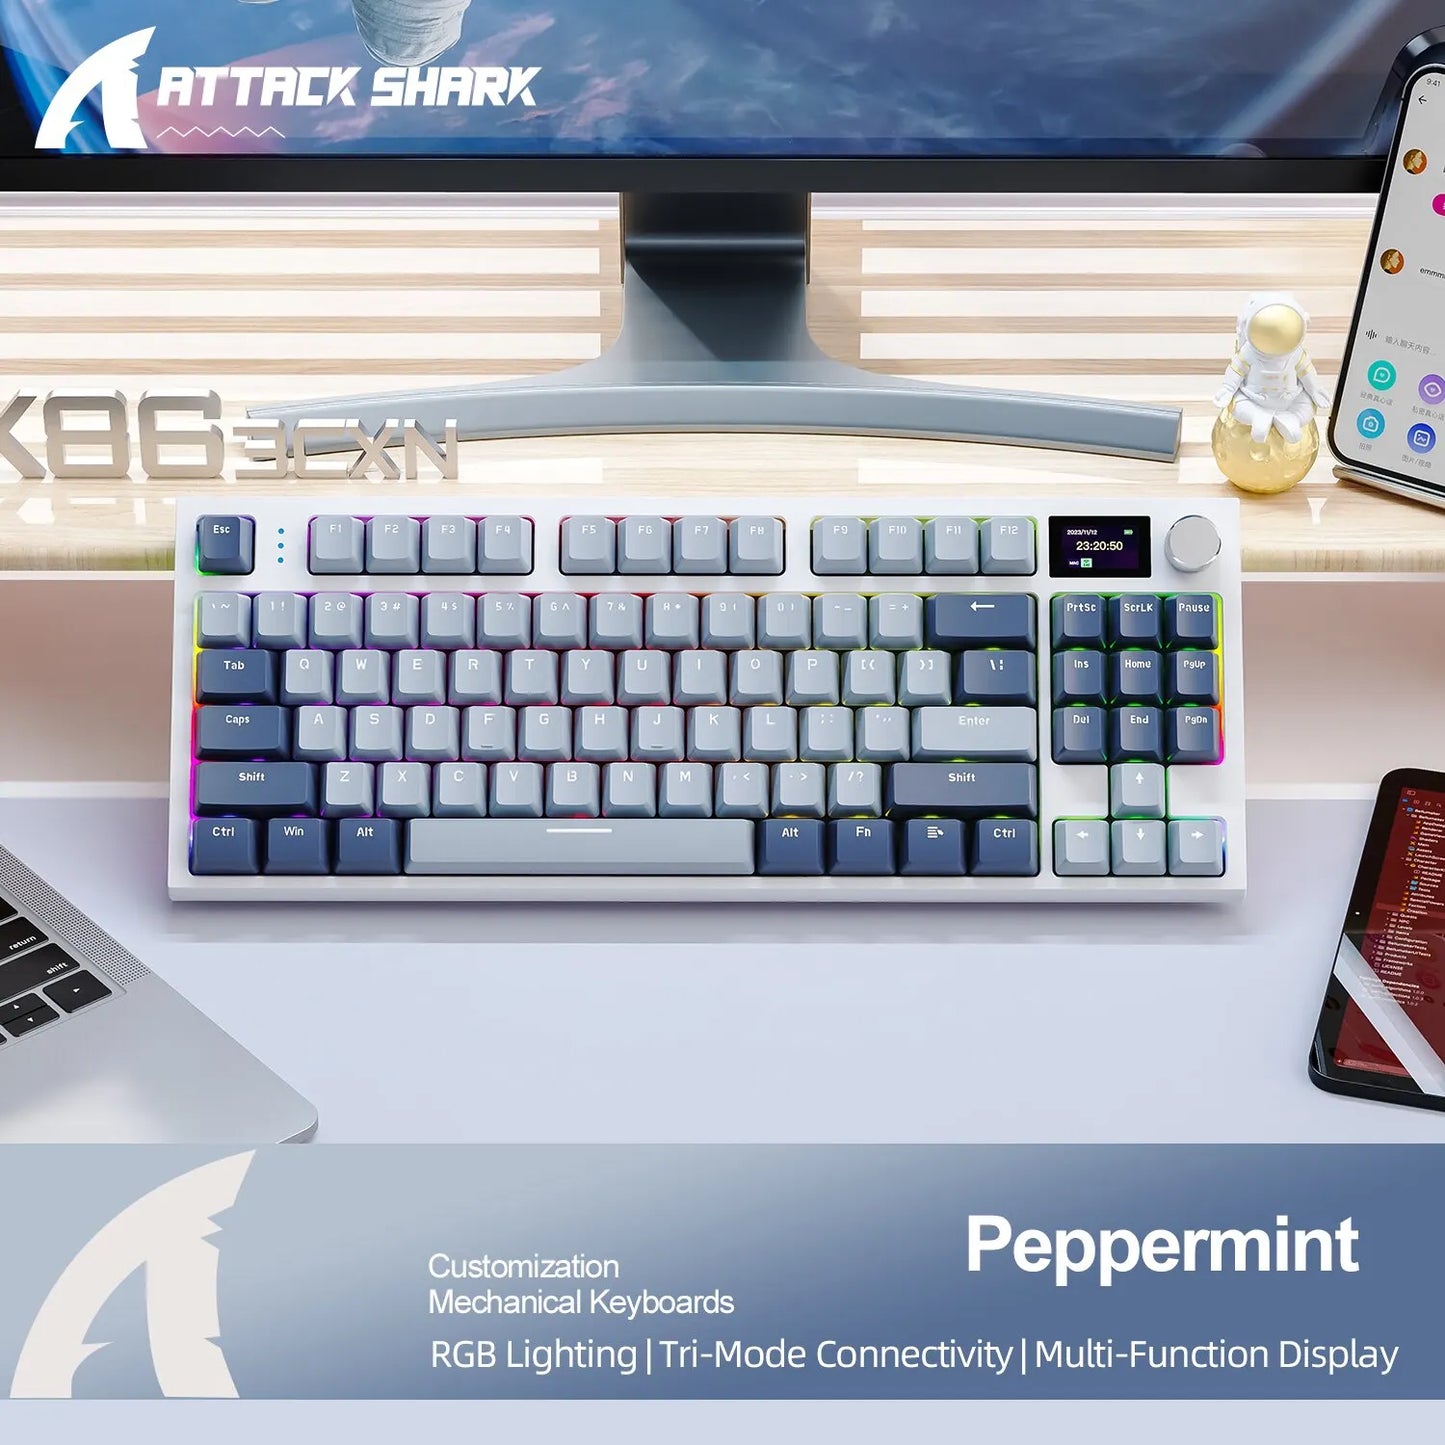 K86 Wireless Mechanical Keyboard